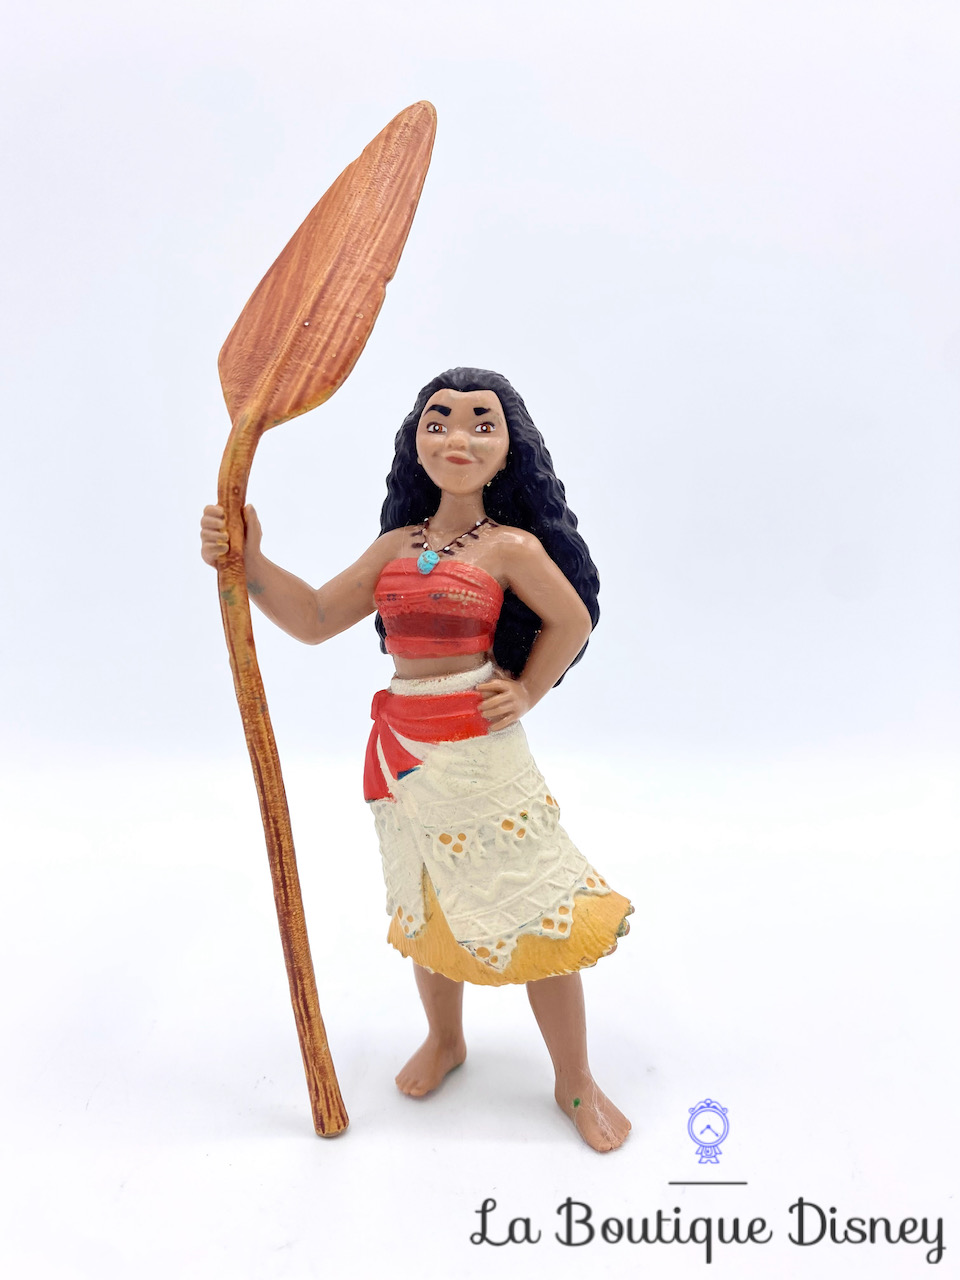 Figurine Vaiana : Cochon Pua - Jeux et jouets Bullyland - Avenue des Jeux